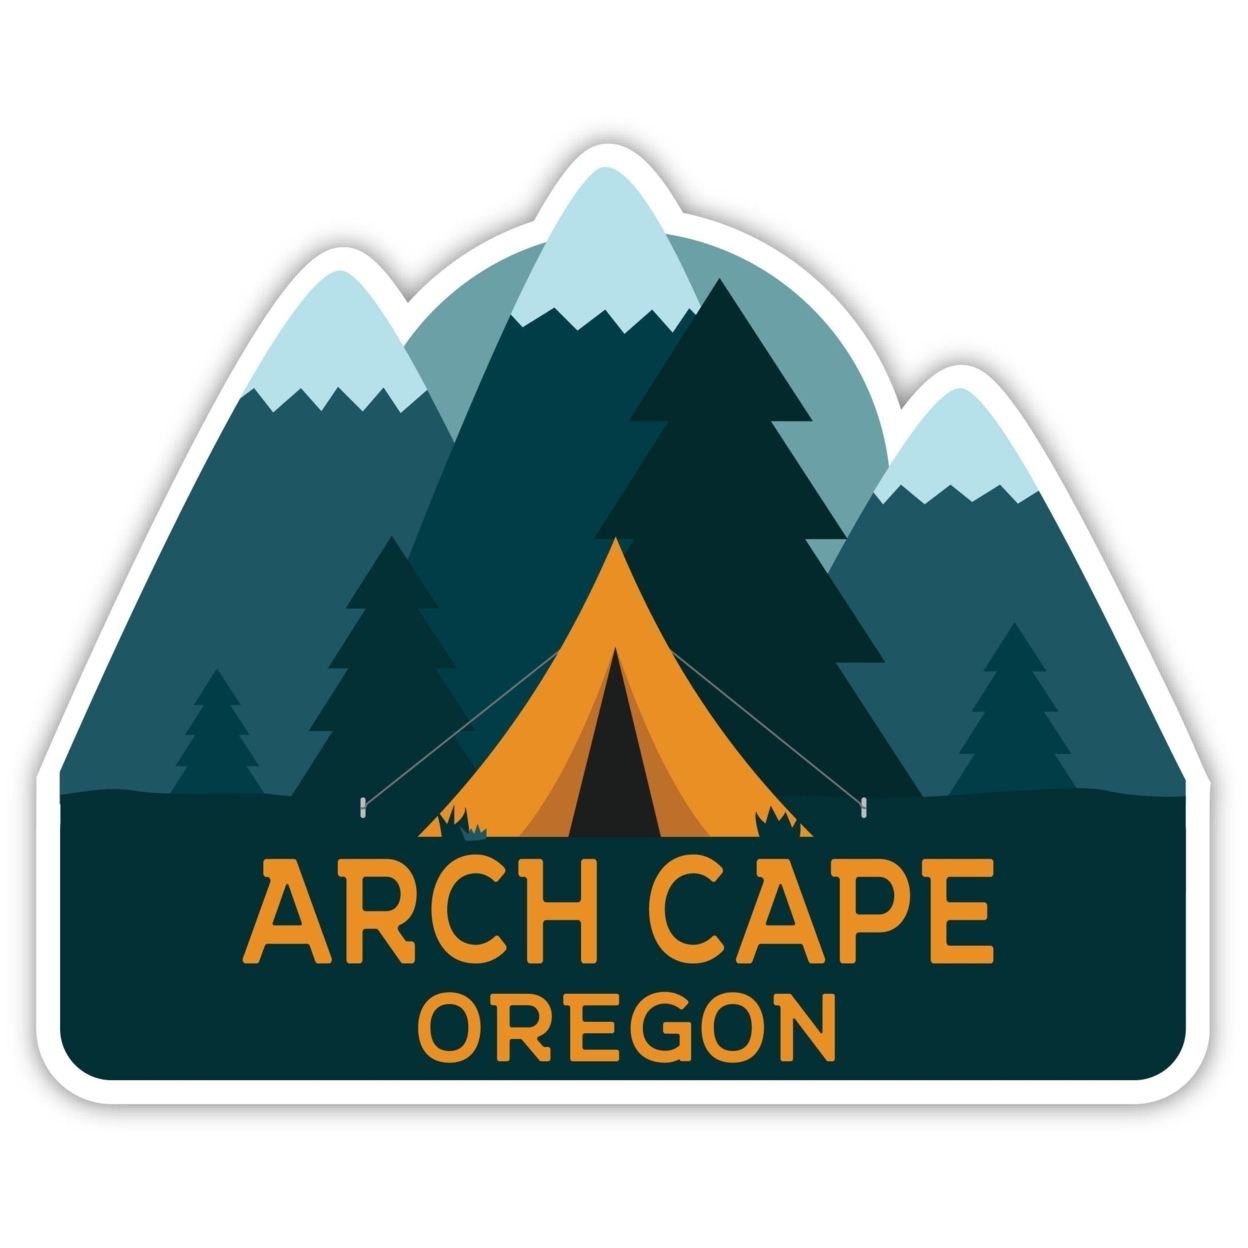 Arch Cape Oregon Souvenir Decorative Stickers (Choose Theme And Size) - Single Unit, 4-Inch, Tent